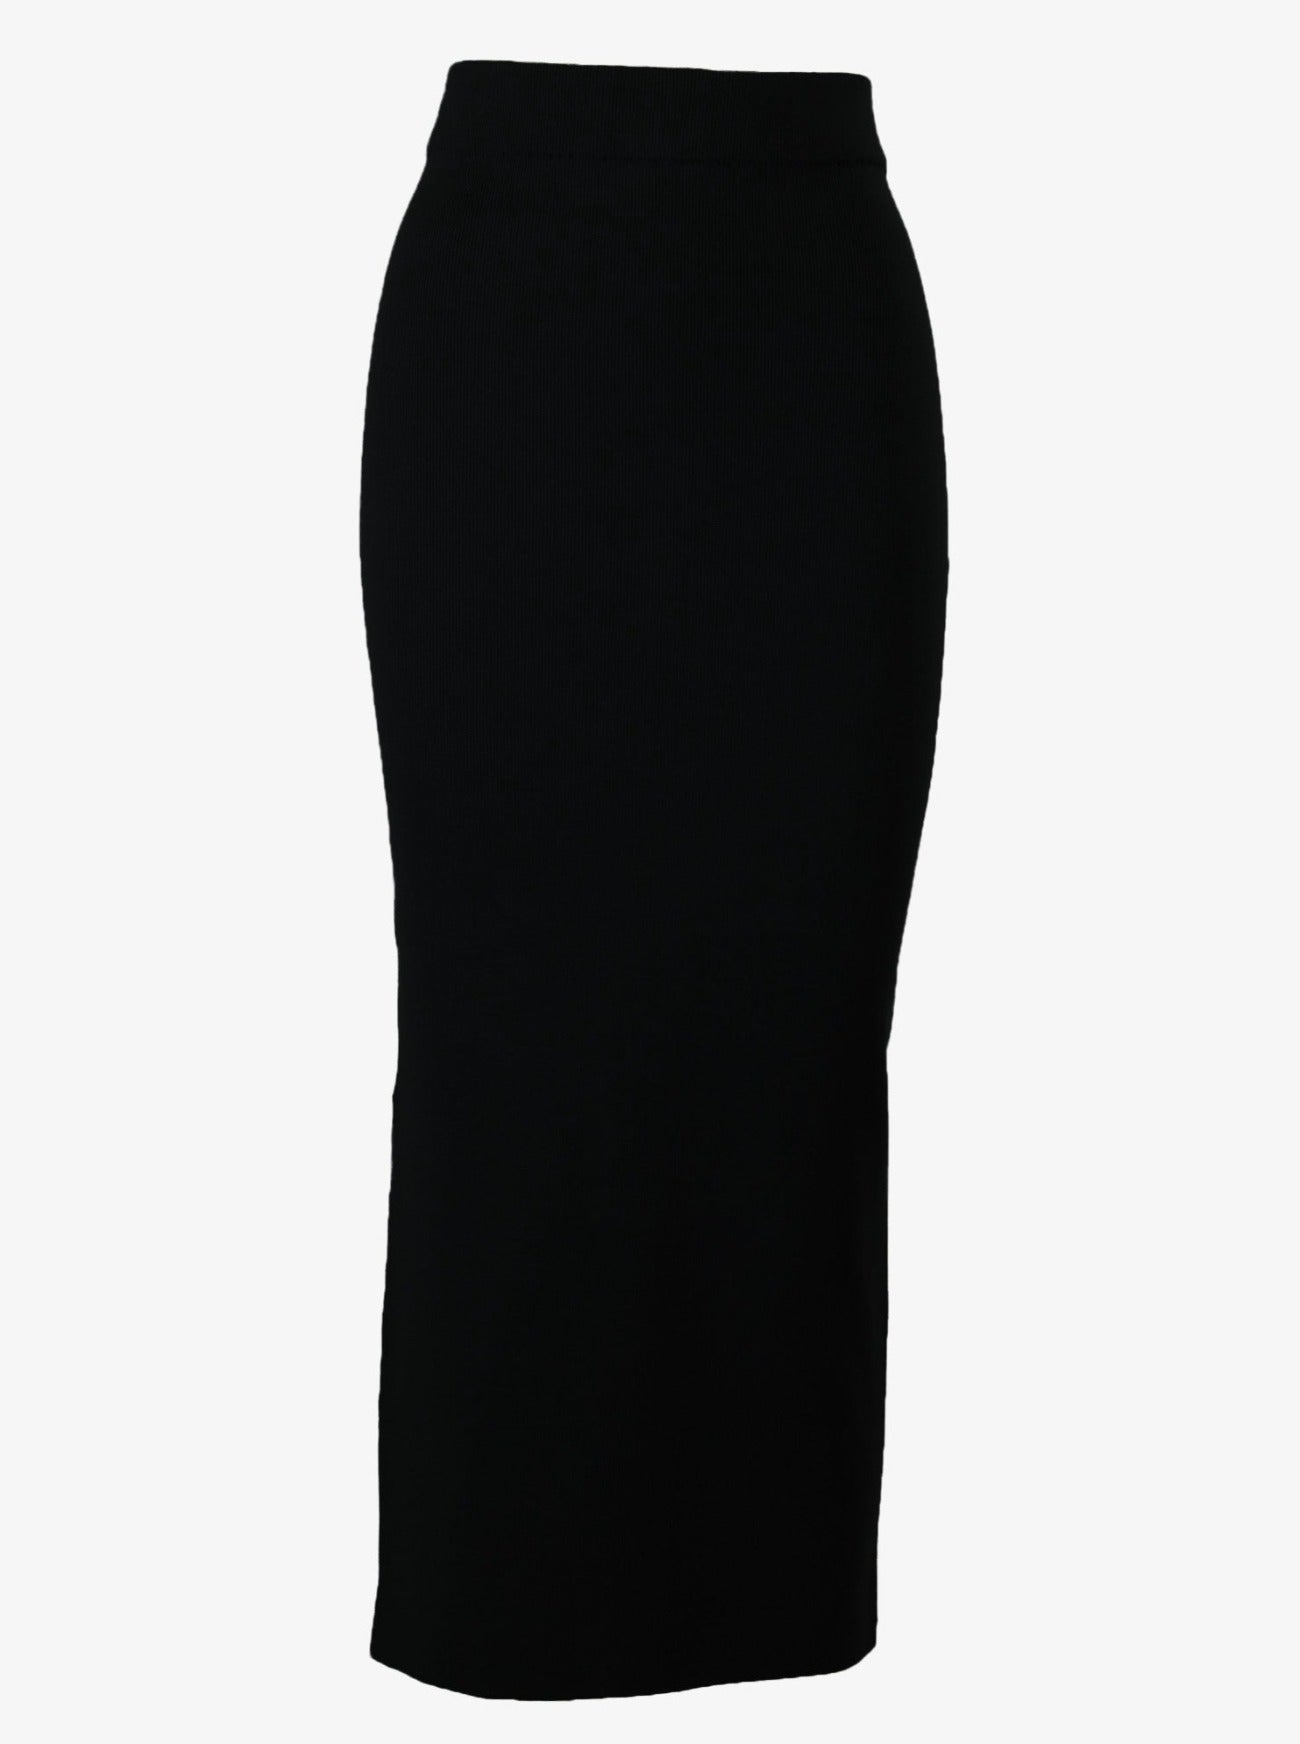 sydney black midi knit skirt